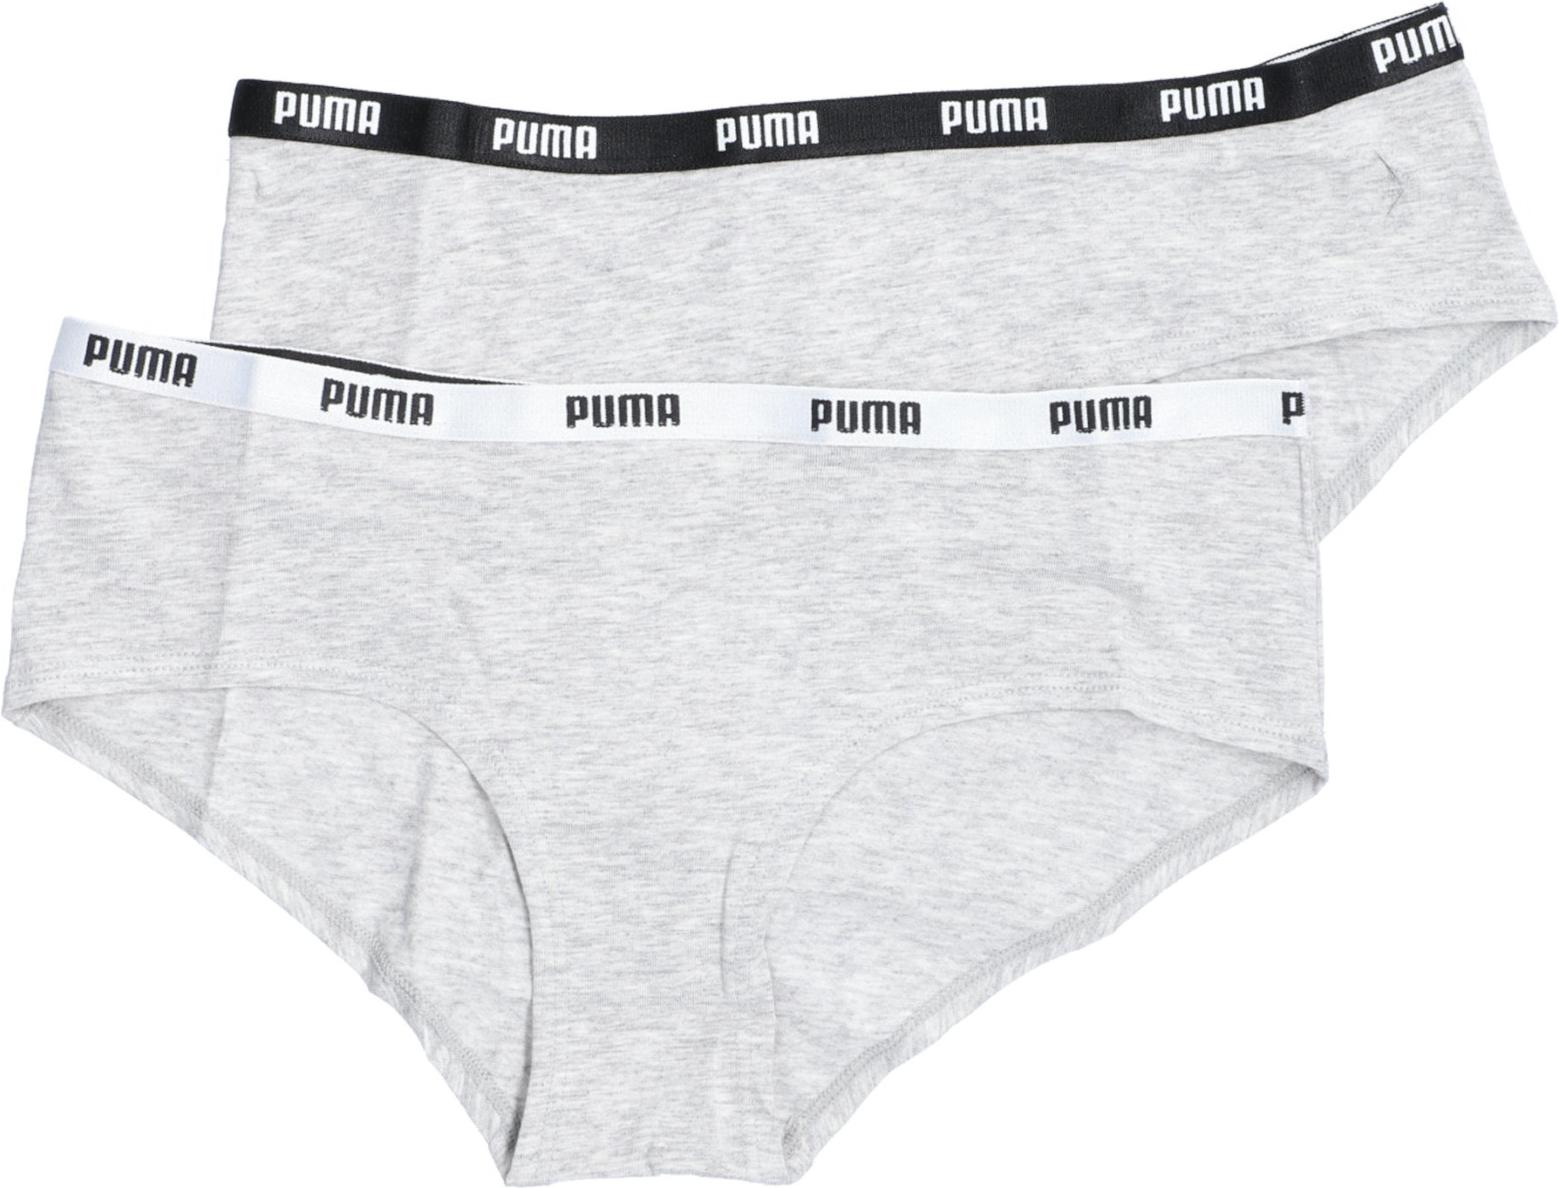 Sous-vêtements pour femme Puma Iconic Hipster 2 PACK